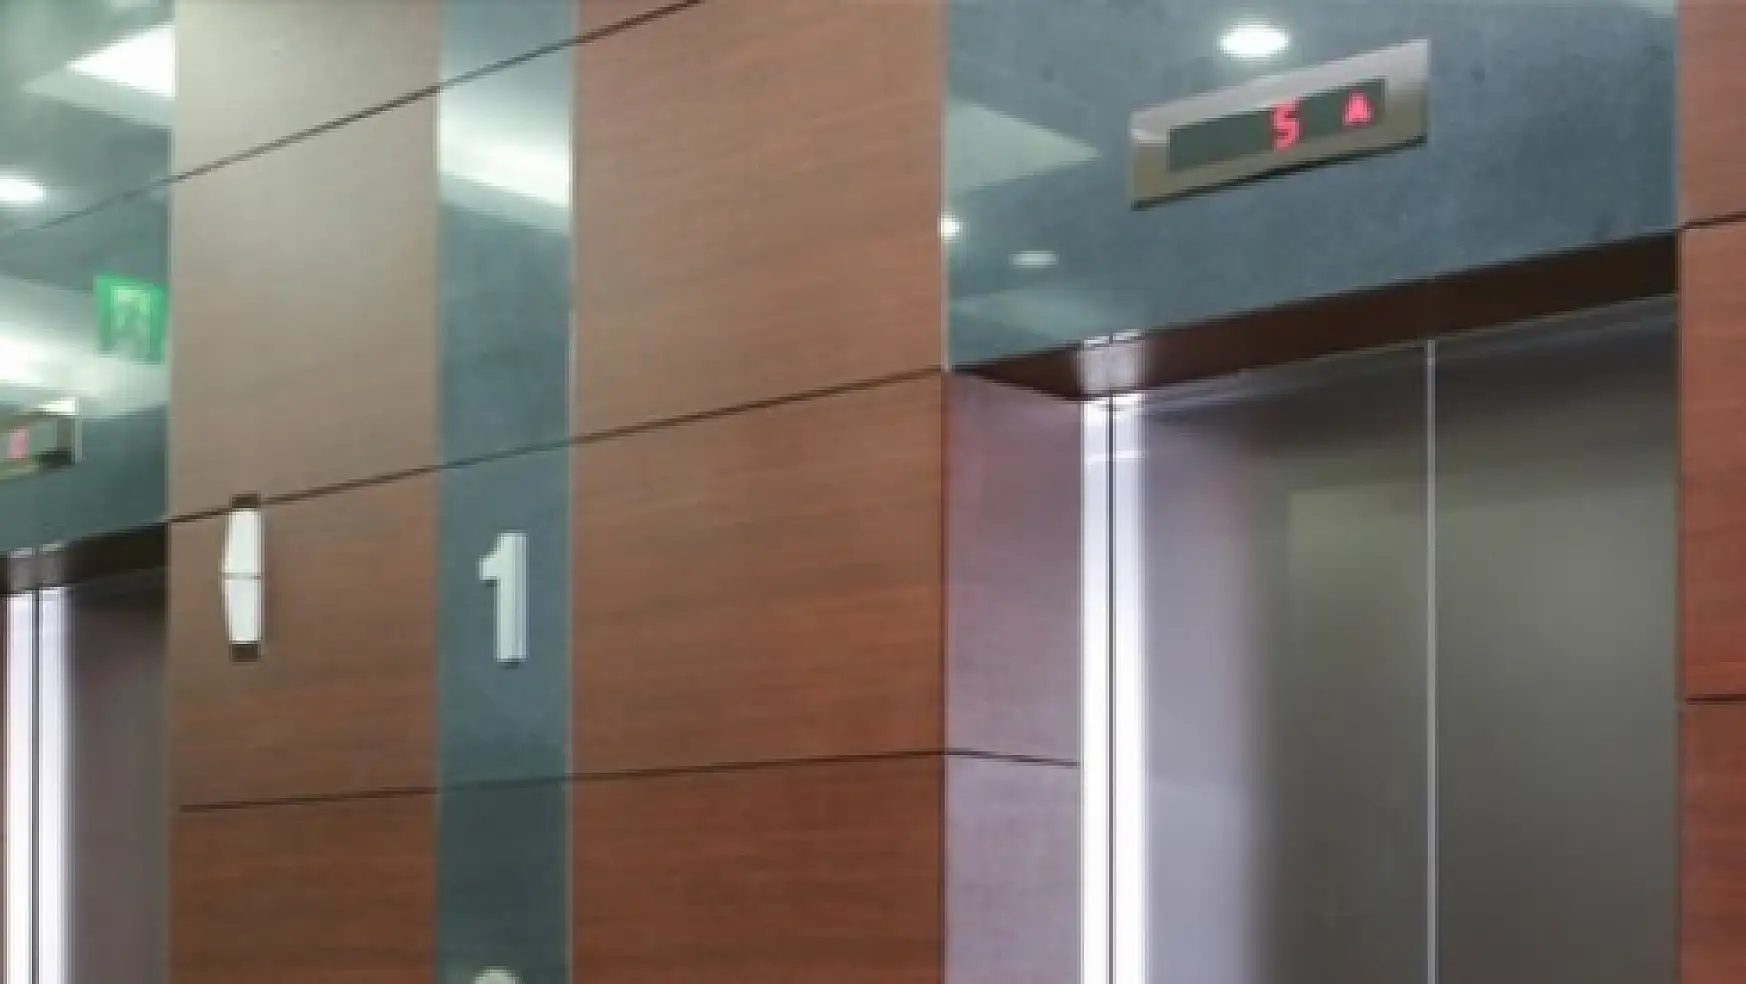 Asansörlere kimlik numarası uygulaması başlıyor